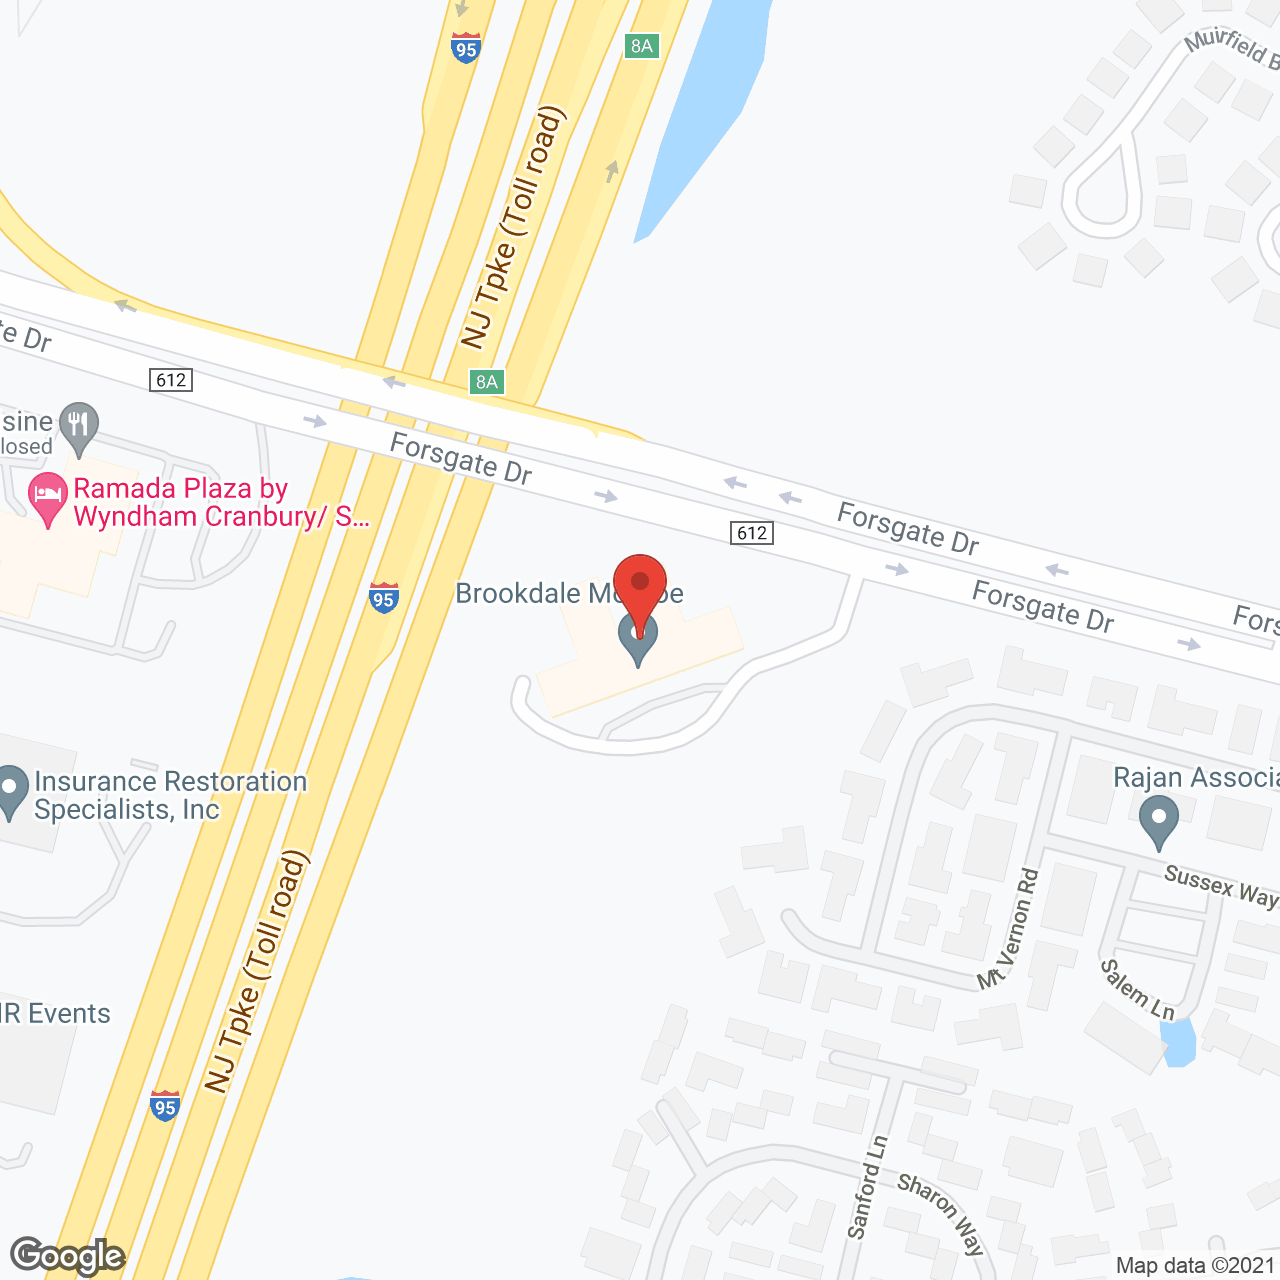 Brookdale Monroe in google map